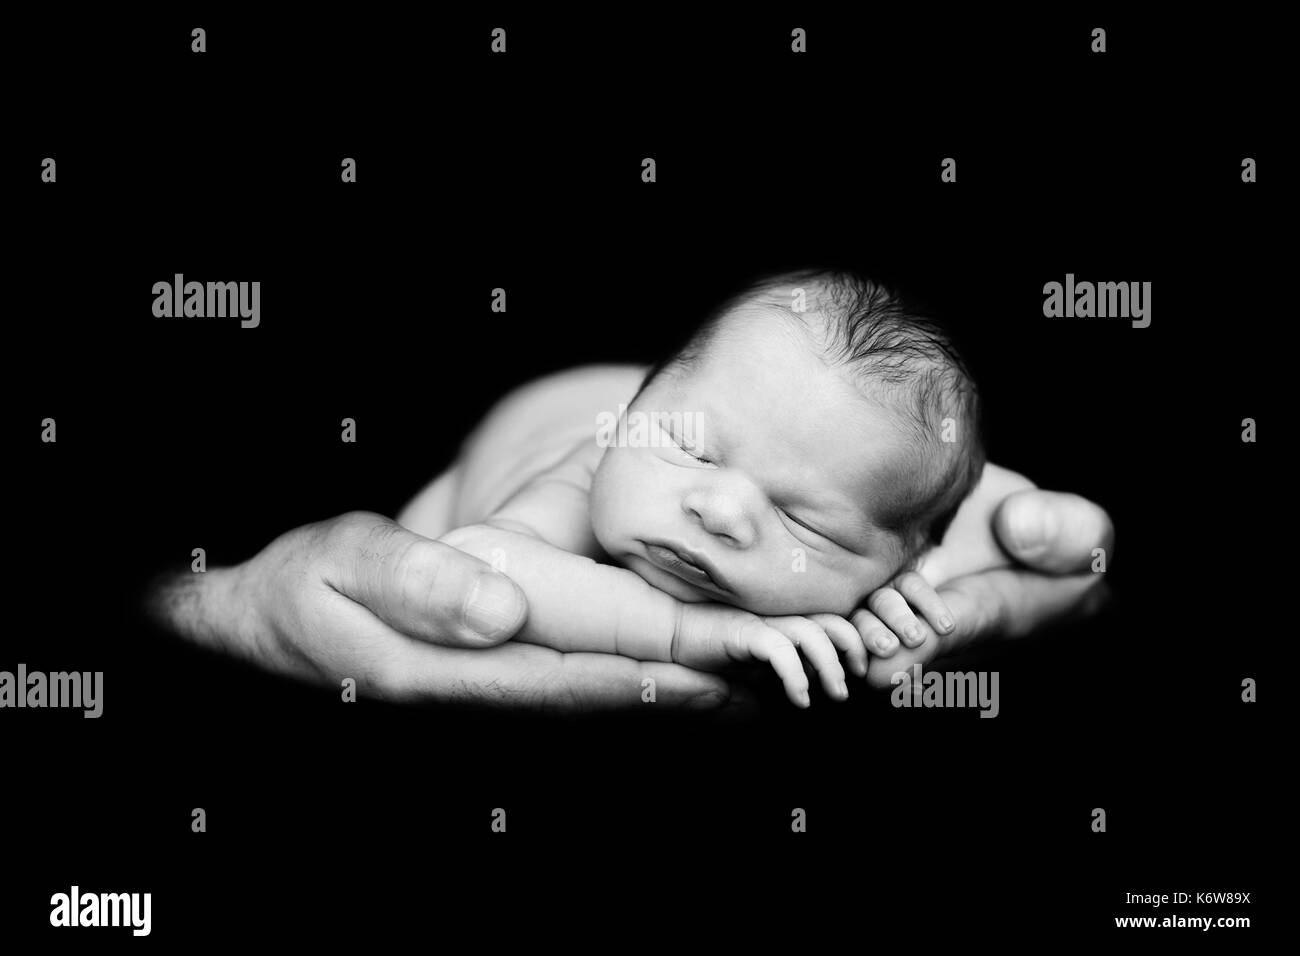 Schönes baby boy, friedlich in Väter Hände Schlafen, Kind, Schlafen, isolierte Bild, schwarzer Hintergrund, Väter, Liebe, Zärtlichkeit, Familienkonzept Stockfoto